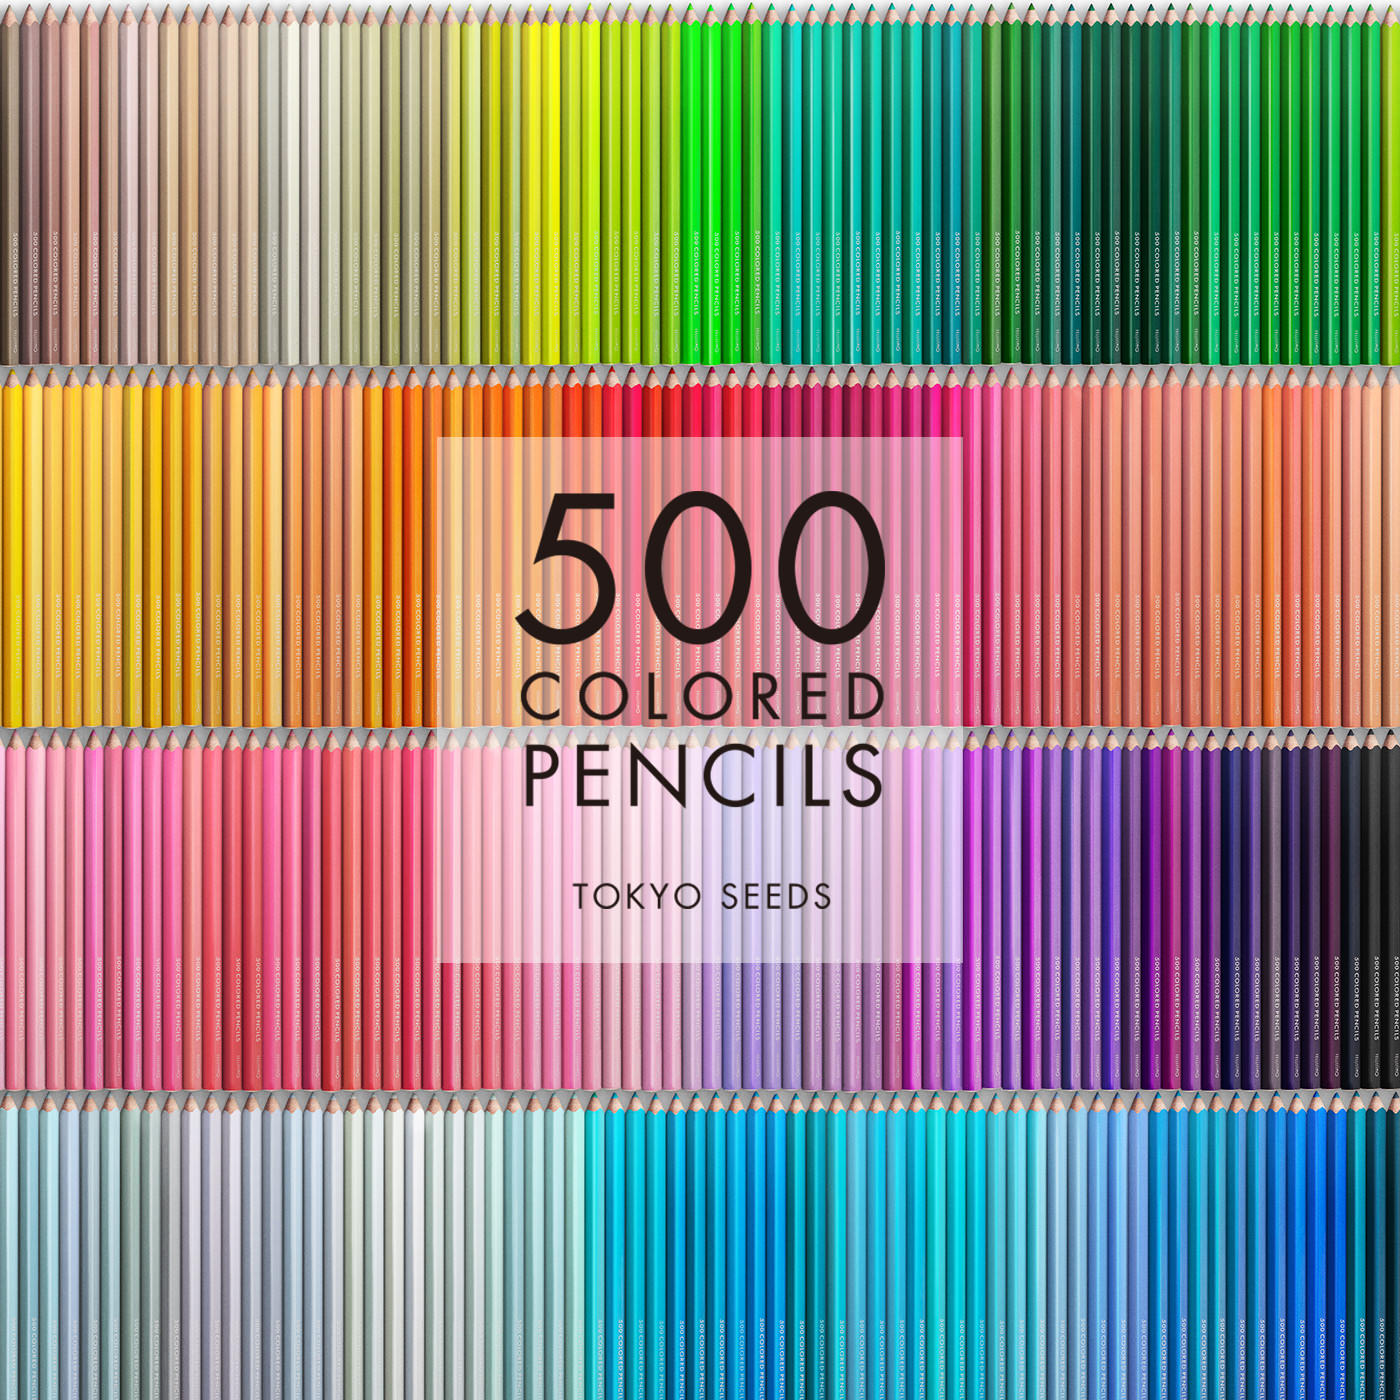 文道楽|包邮芬理希梦500色系列彩色铅笔画笔填色收藏手账绘画彩铅